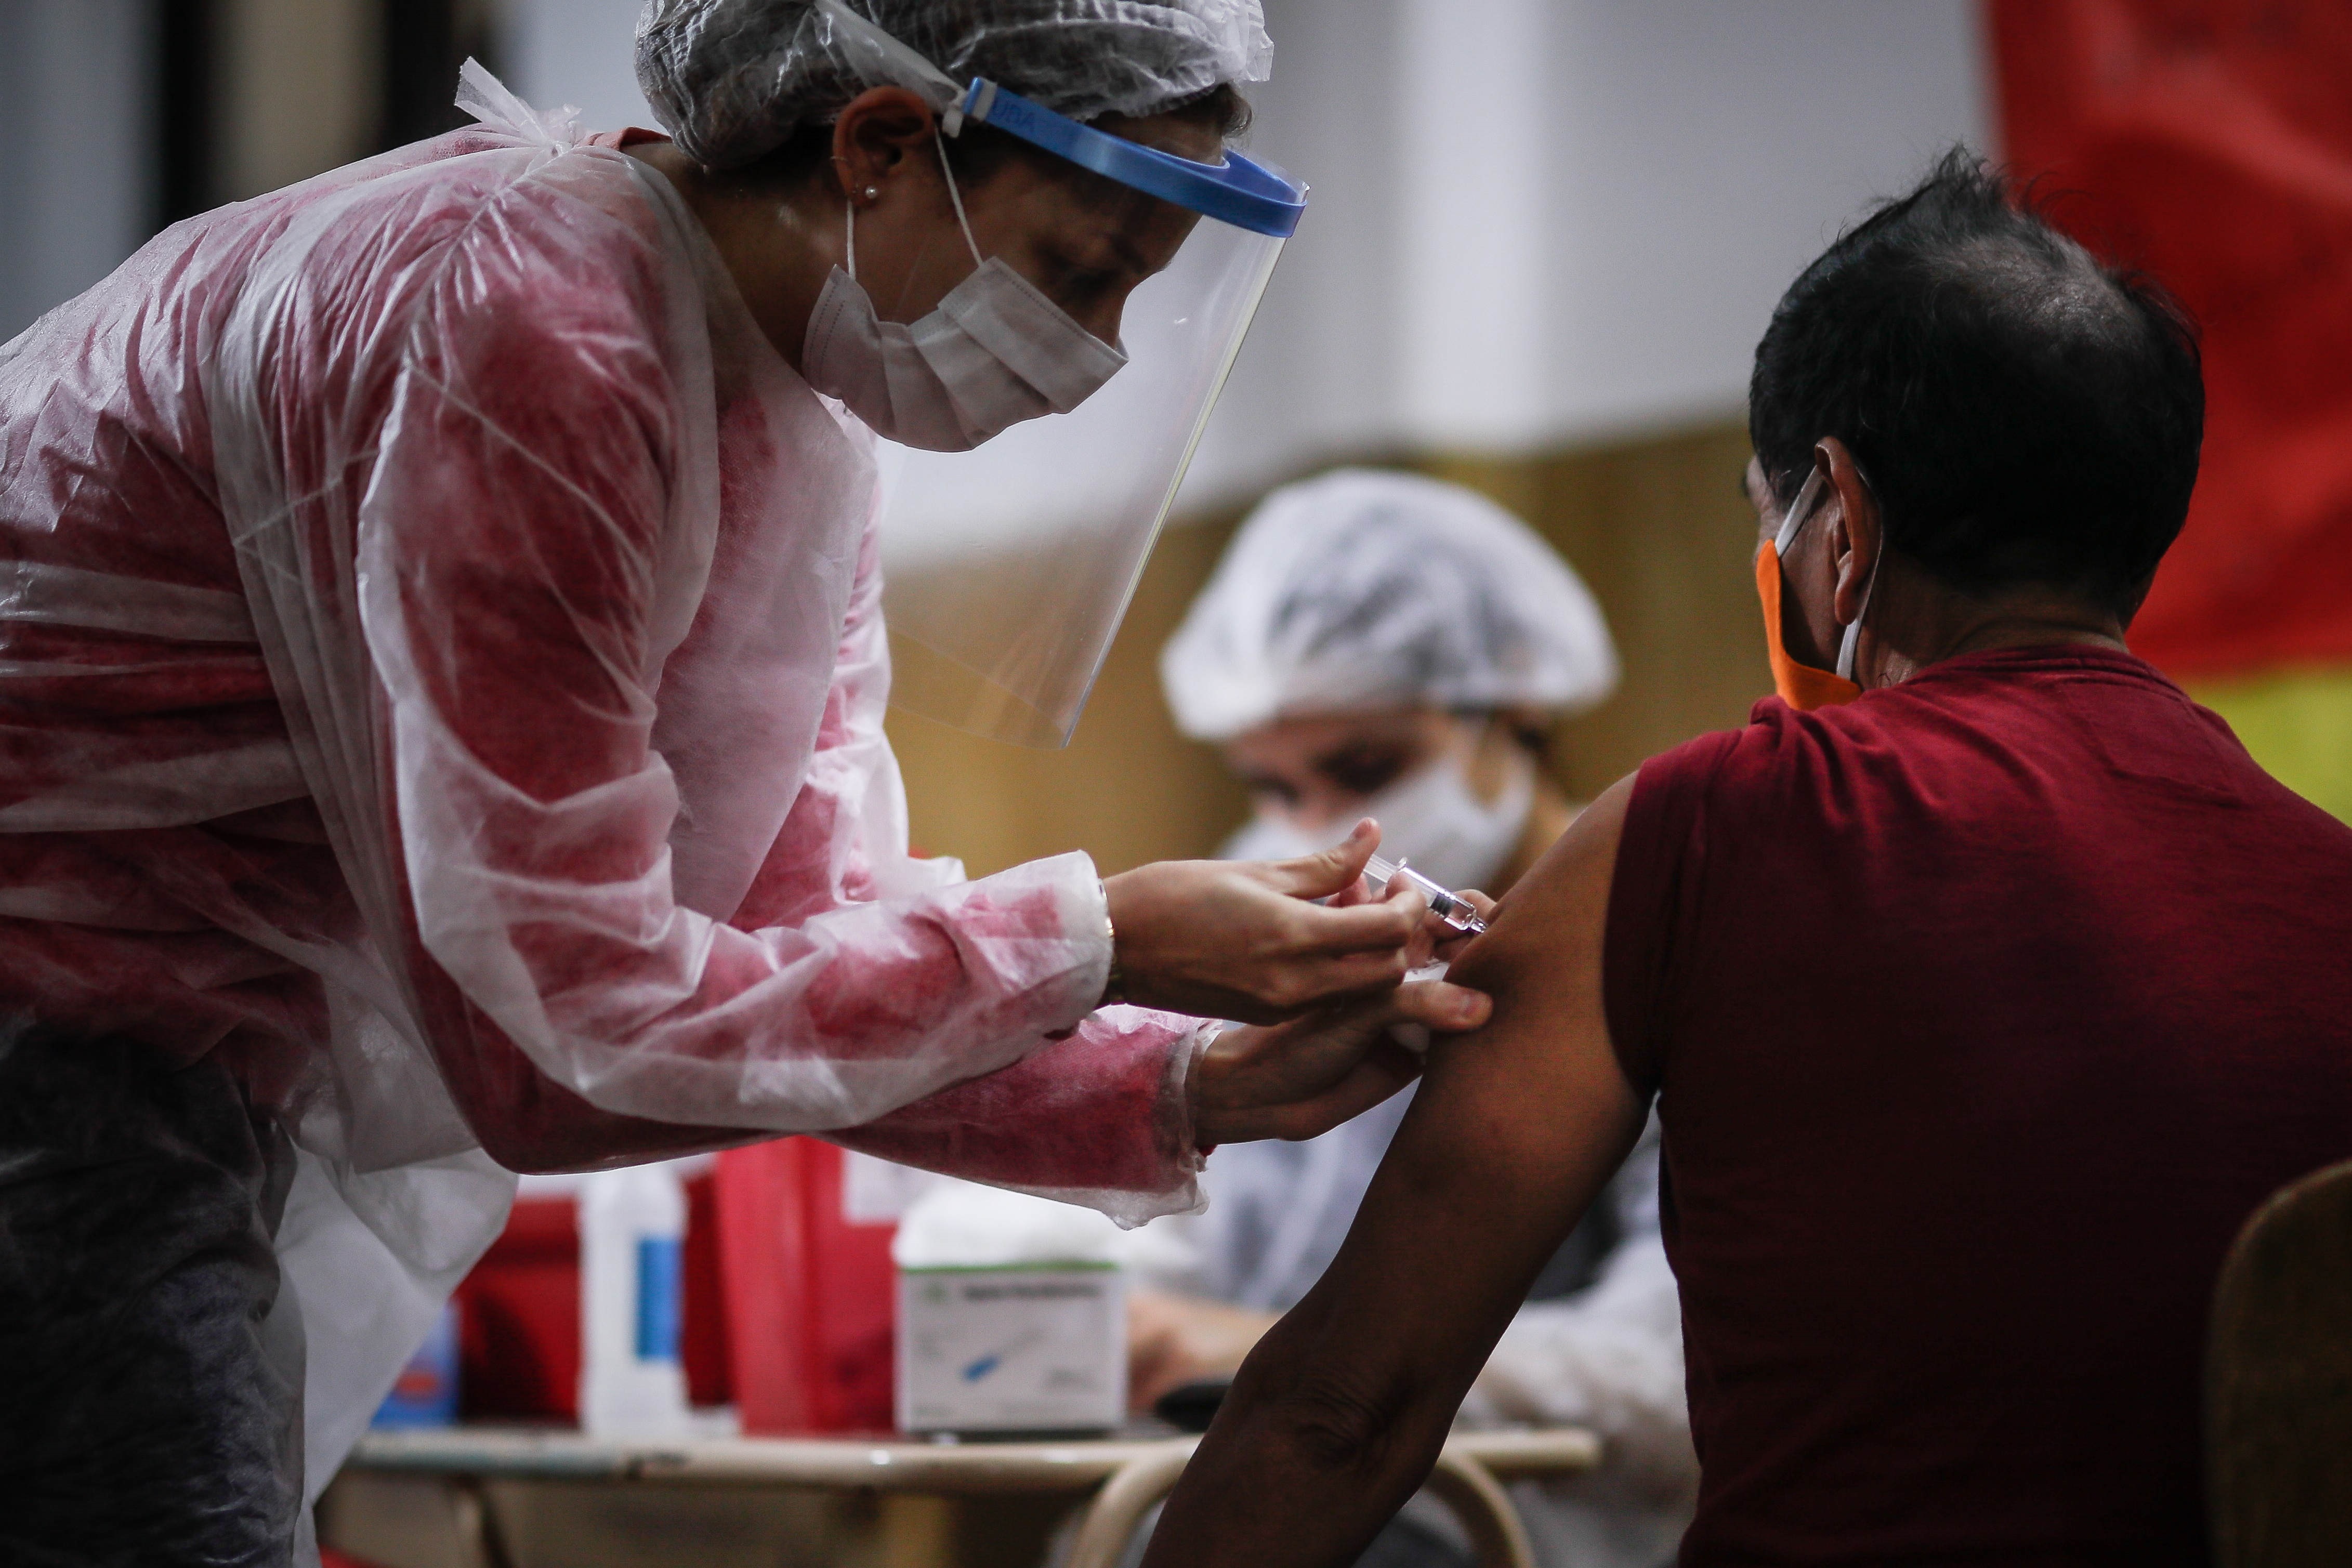 El coronavirus favorece la pandemia de la corrupción en Latinoamérica